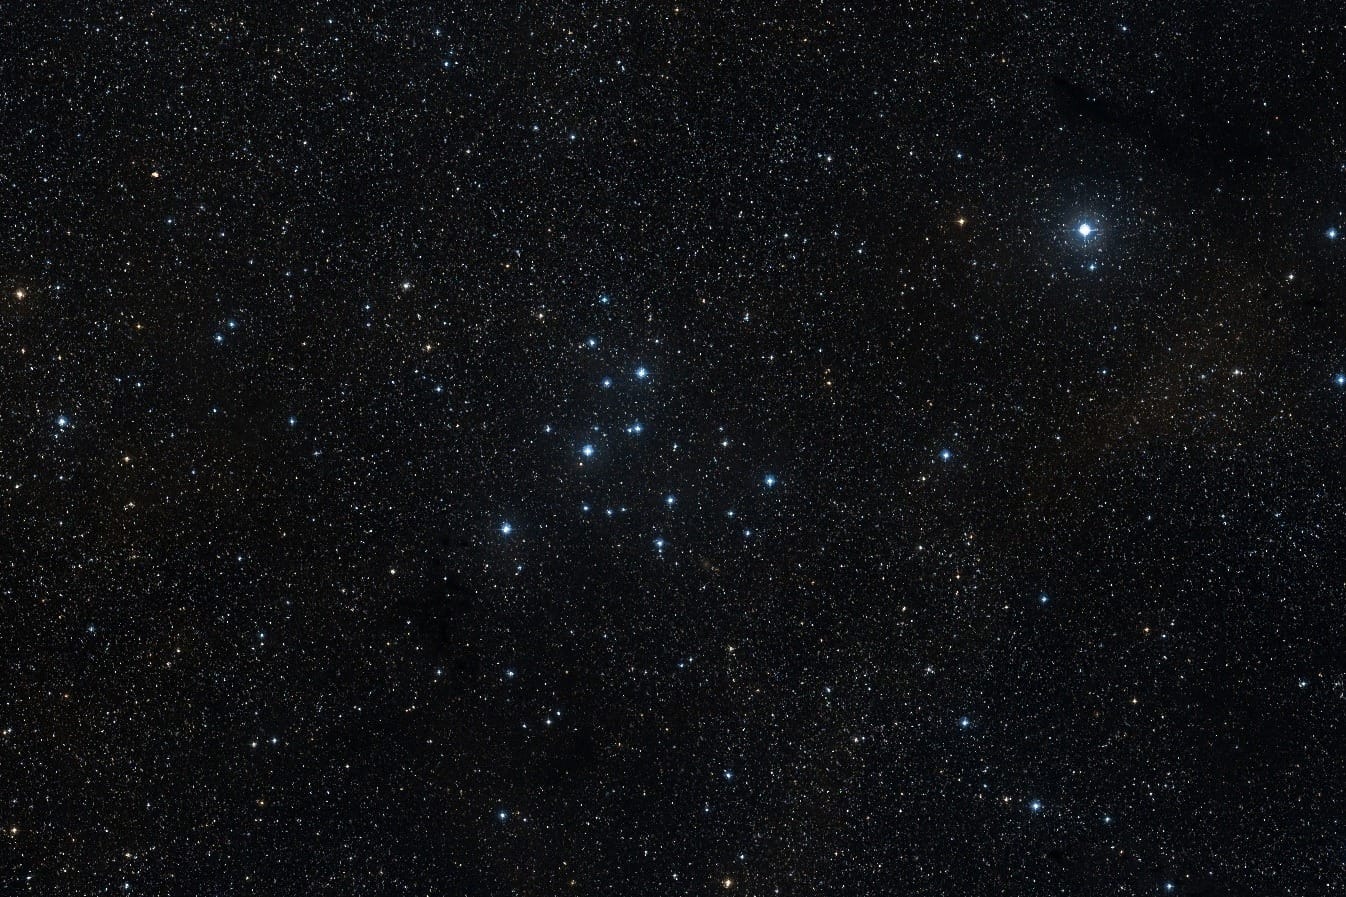 Bläulich-weiß leuchten die hellsten Sterne des offenen Sternhaufens M39